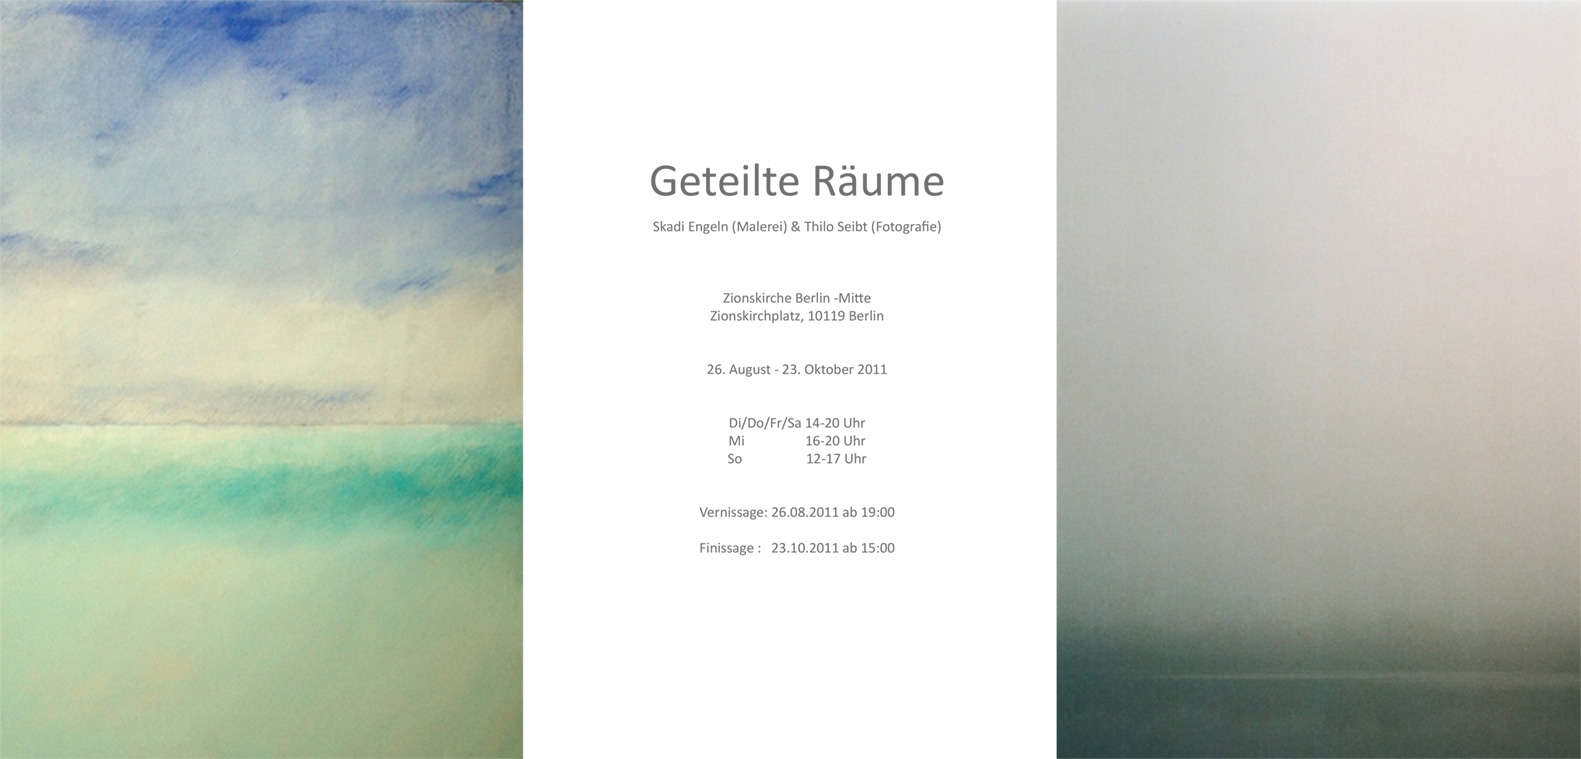 opening “Geteilte Räume” at 26.08.2011